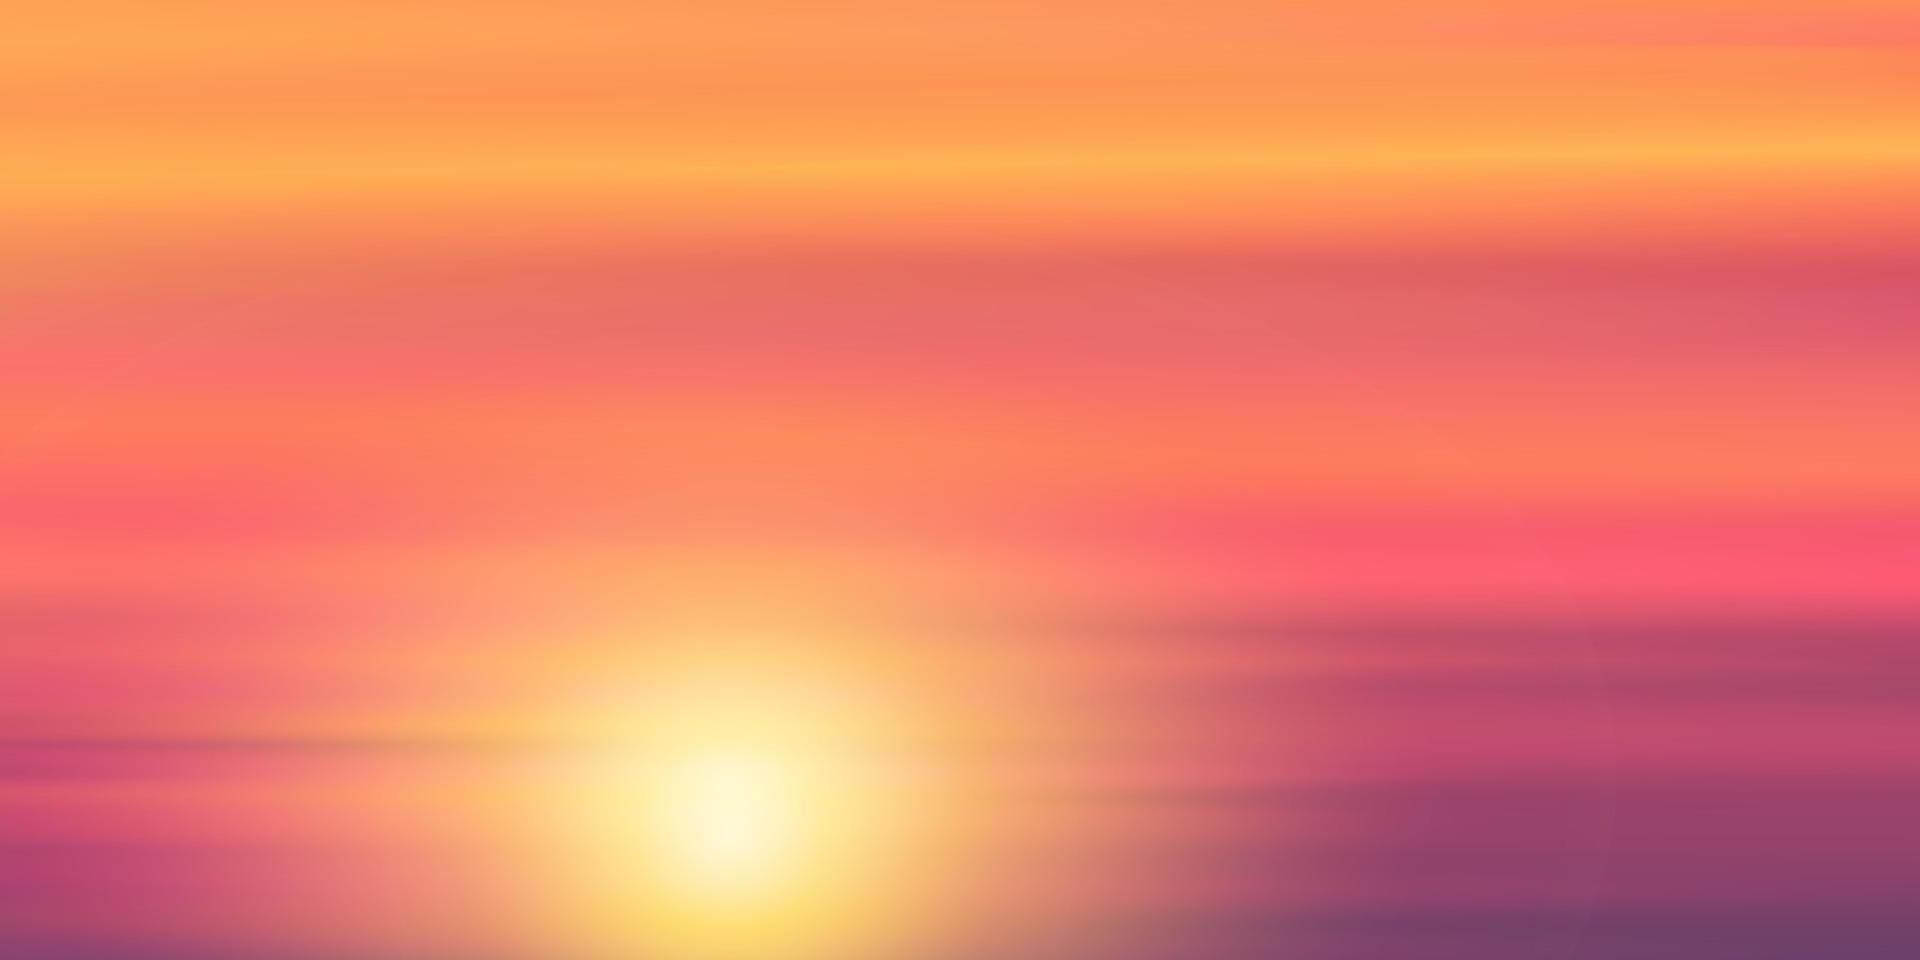 céu do pôr do sol com nuvem em laranja, amarelo, rosa, cor roxa, paisagem crepuscular dramática com o nascer do sol na manhã, horizonte vetorial bela nanture céu idílico crepúsculo no outono, noite de inverno vetor